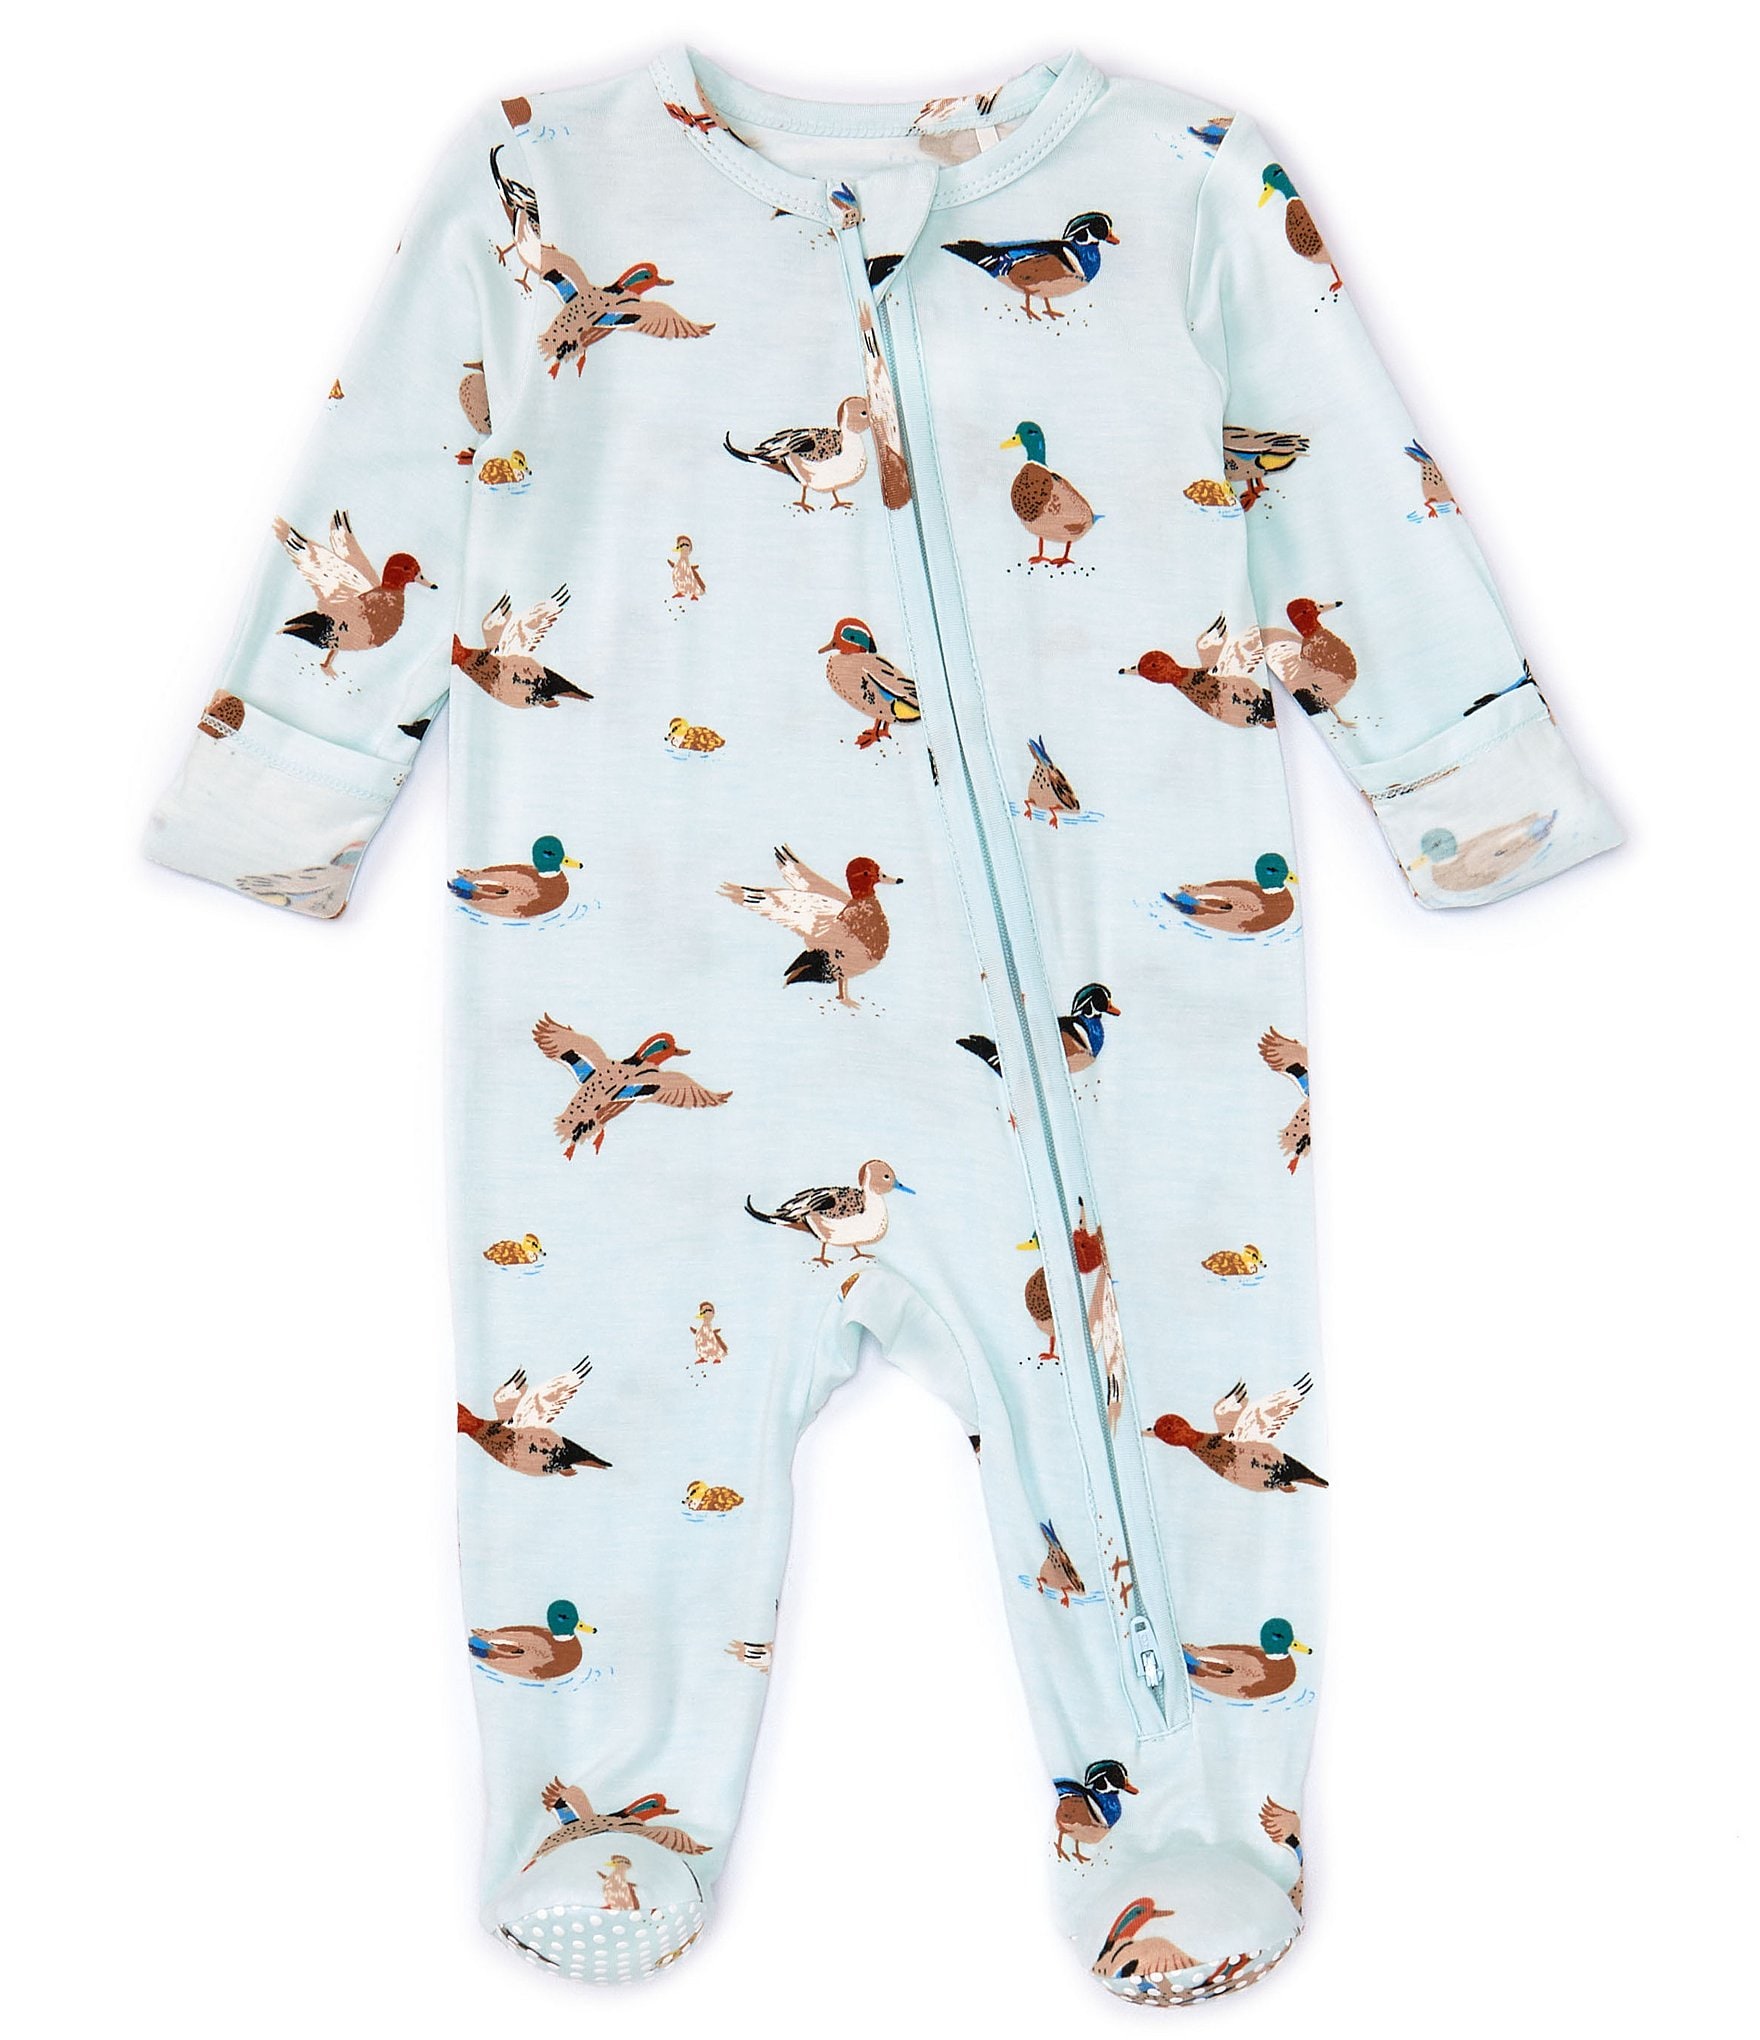 Angelbaby ropa para bebés y niños - Talla: 3-6 meses y 6-9 meses Precio:  $60.000 Ref 470 Envío gratis